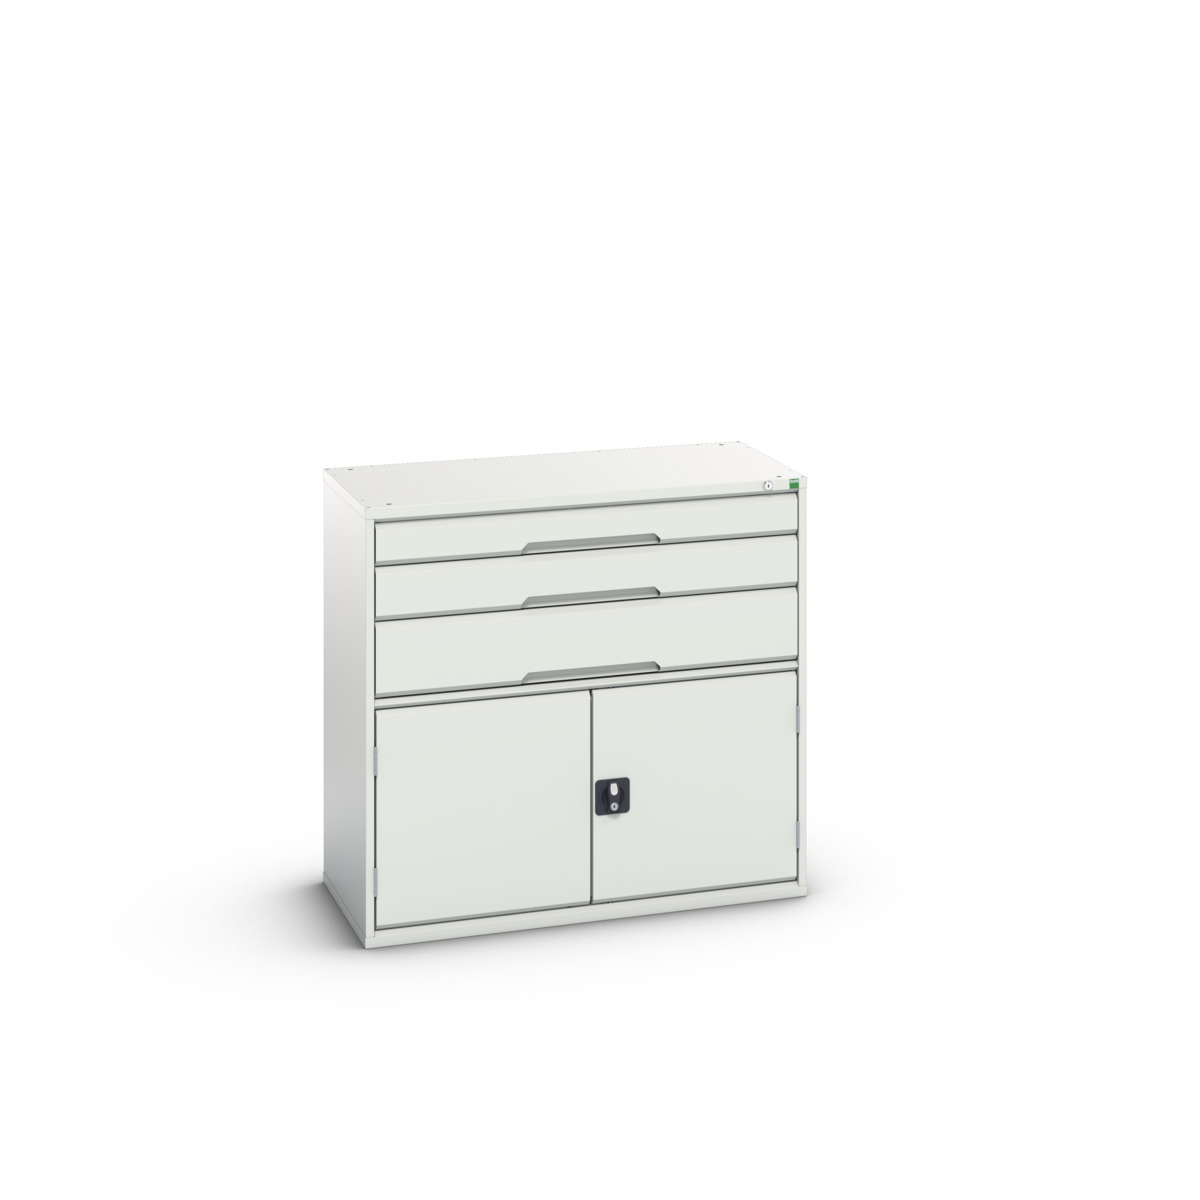 16925561.16 - verso drawer-door cabinet